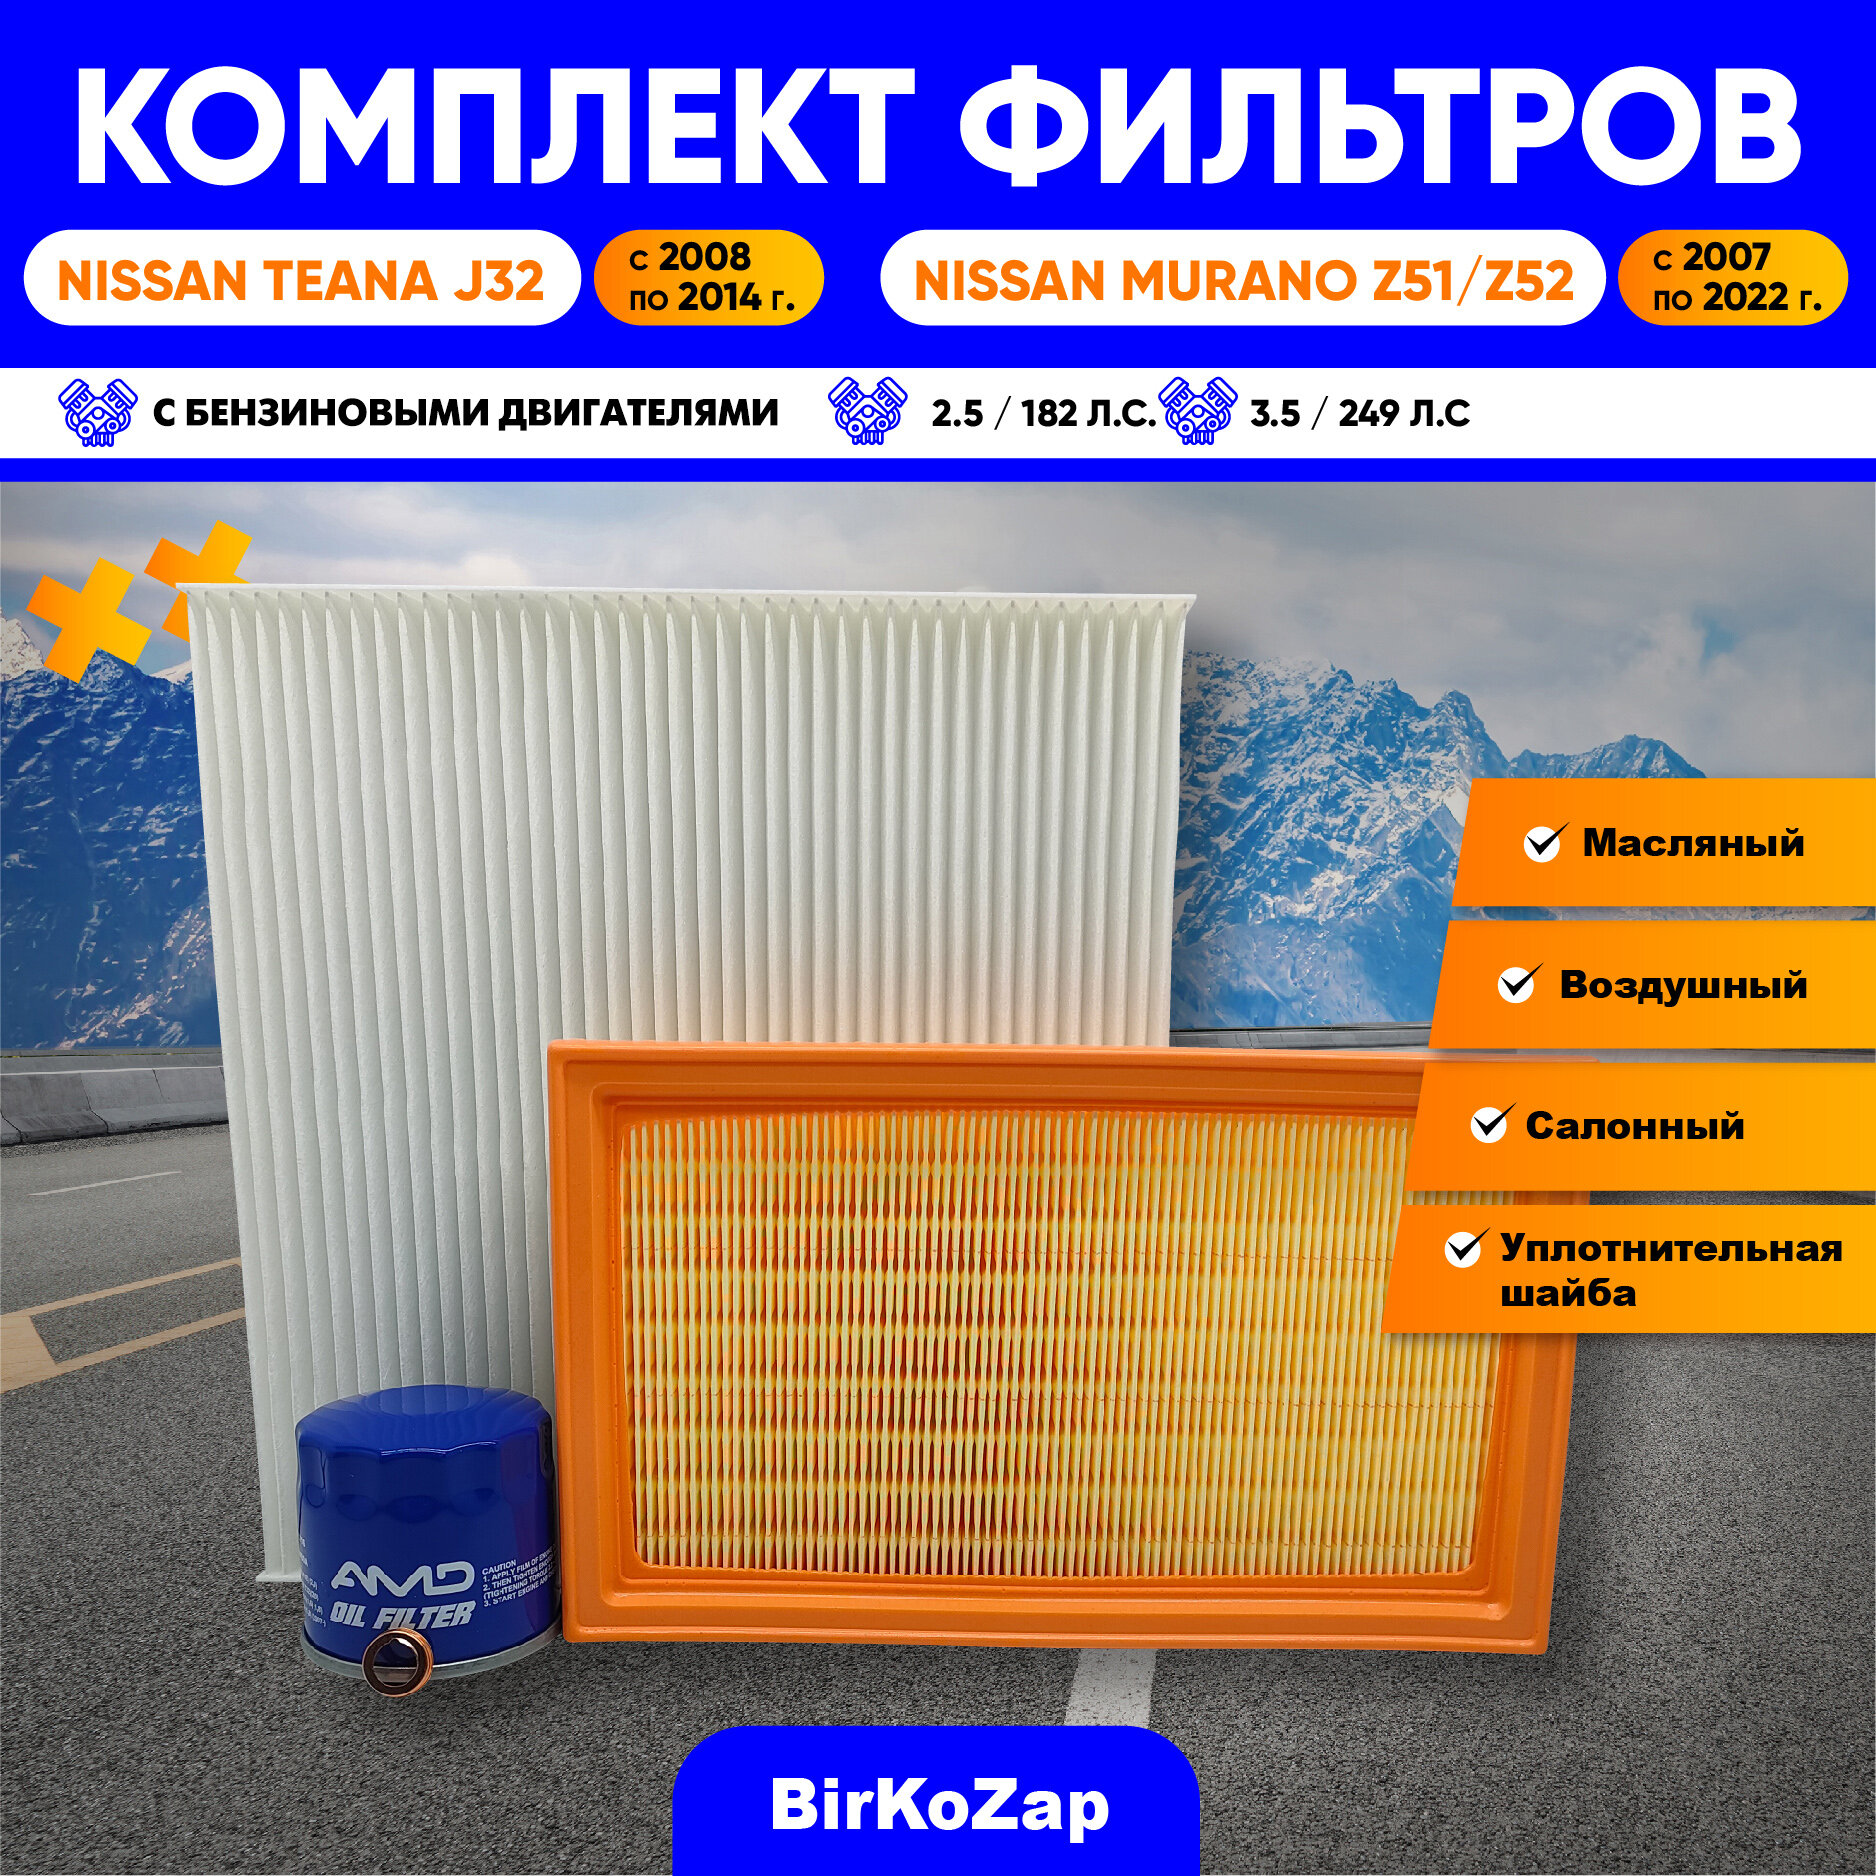 Комплект фильтров для ТО NISSAN Teana J32, NISSAN Murano Z51, Z52 (фильтр масляный, воздушный, салонный + прокладка сливной пробки)